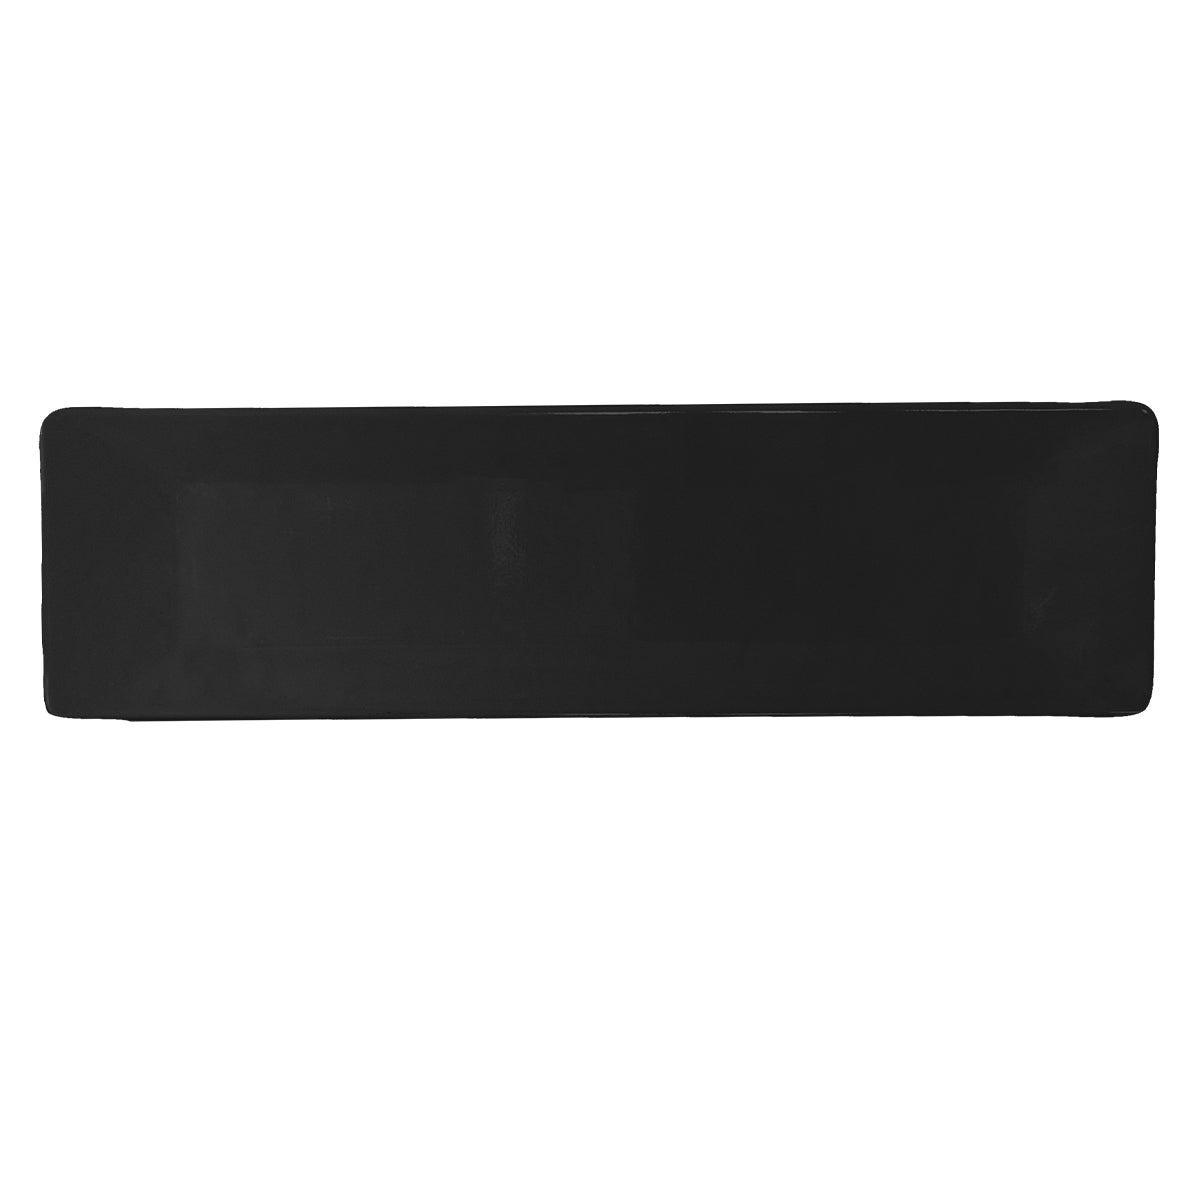 Bandeja Rectangular de 32 x 9 cm de Melamina Color Negra